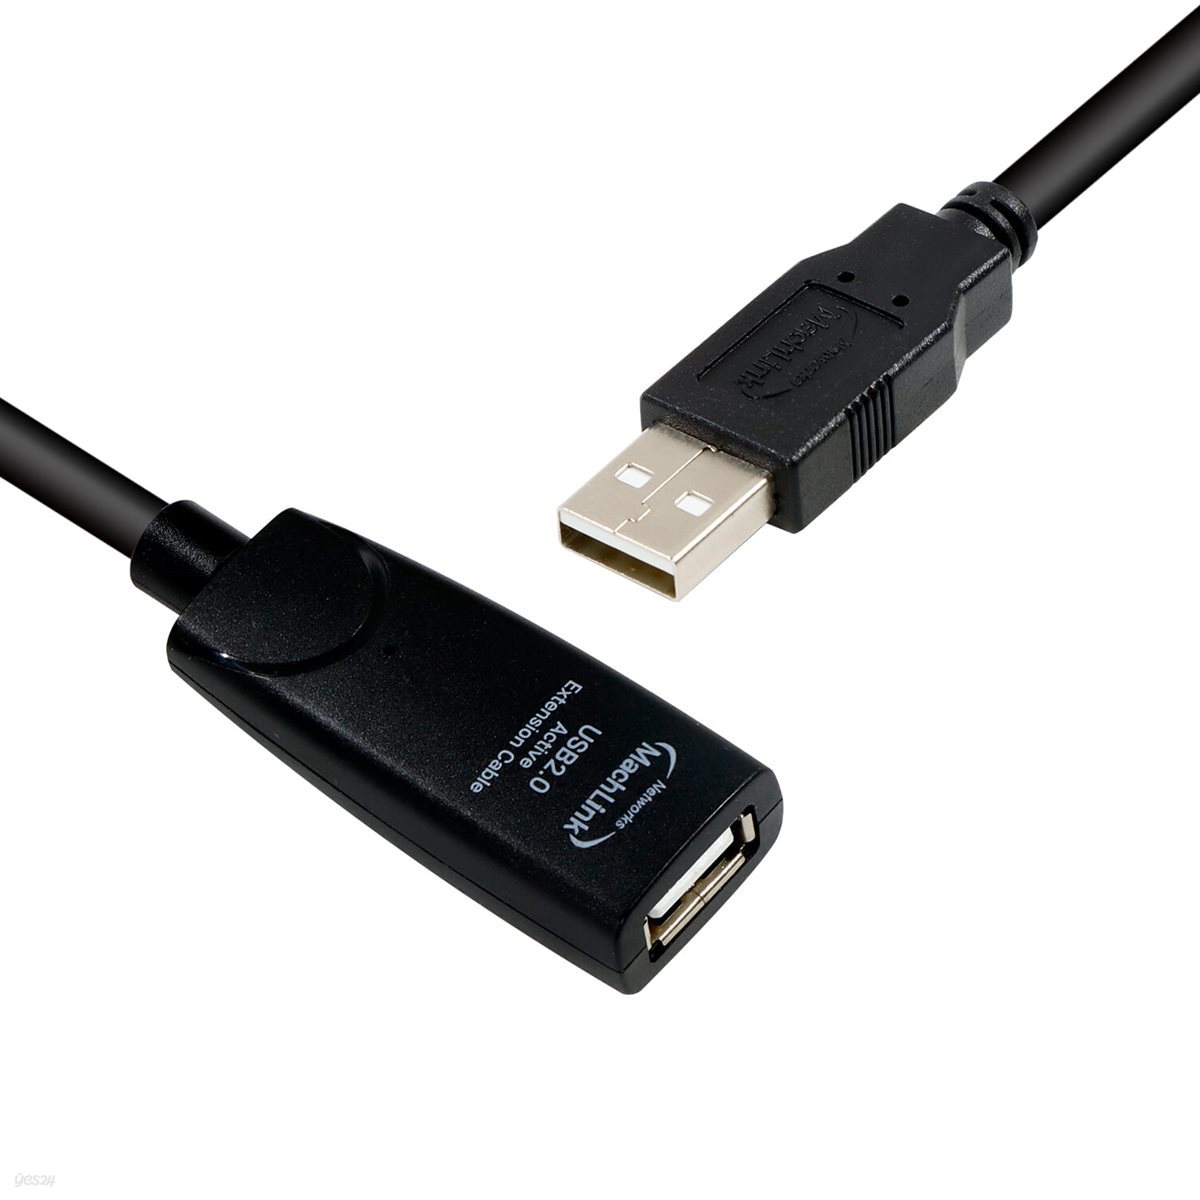 마하링크 USB 2.0 리피터 연장 케이블 5M ML-URP5